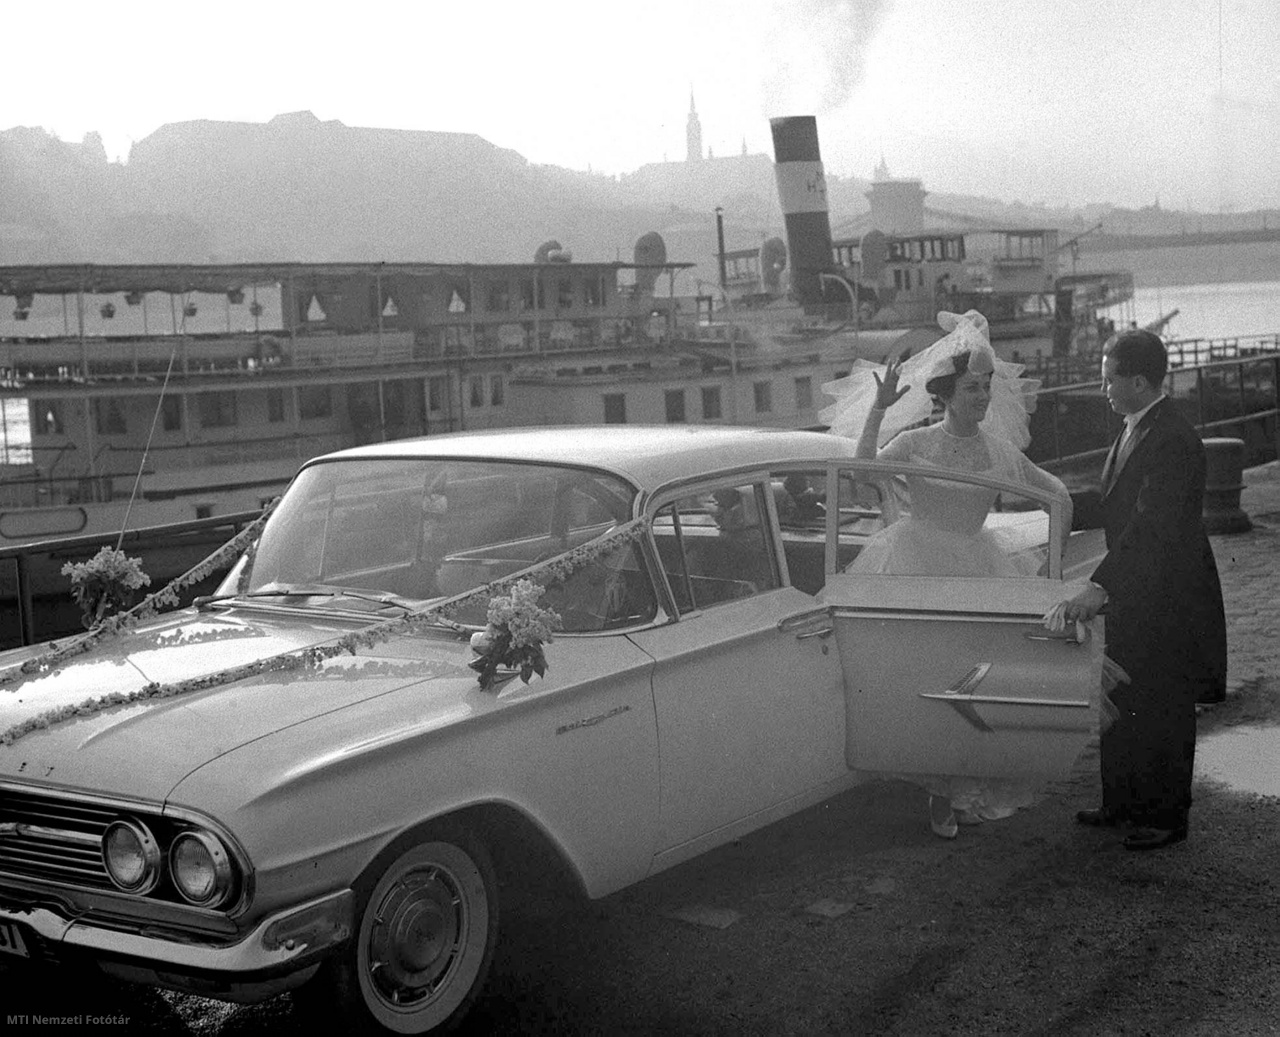 Budapest, 1963. május 4. Szilágyi János sebészorvos és Tenzlinger Ildikó, az IBUSZ (Idegenforgalmi, Beszerzési, Utazási és Szállítási Rt.) tisztviselőnője esküvőjük után fehér, nászajándékba kapott 1960-as Chevrolet Bel Air Sedan típusú gépkocsival érkezik az ünnepi vacsorára, amelyet a hajóskapitány papa ötletére a Szabadság sétahajón költenek el.